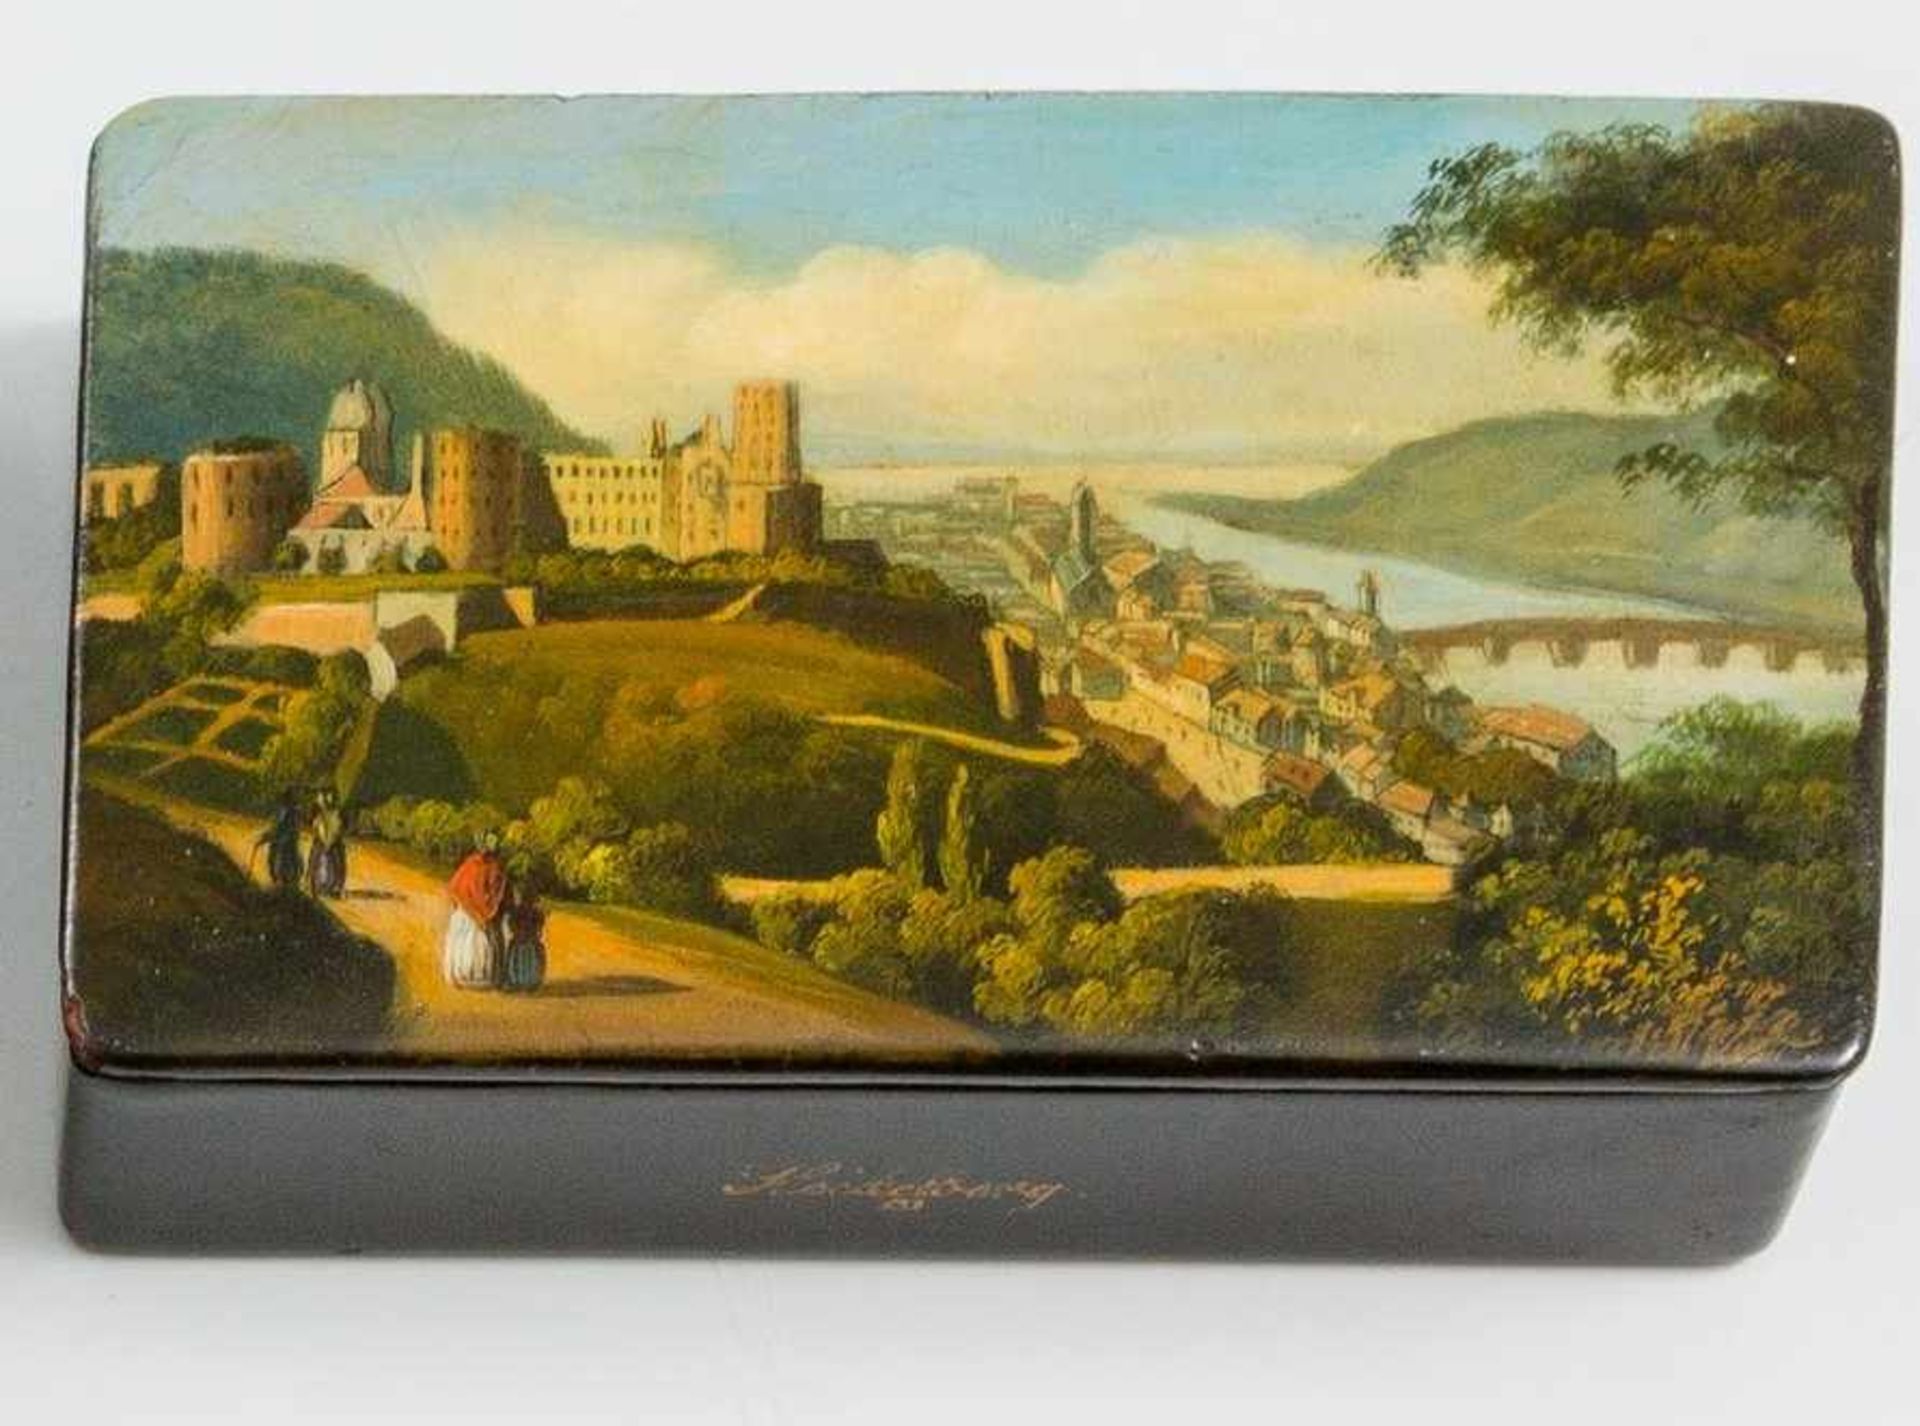 Rechteckige SchnupftabaksdoseDeutsch, um 1840Mit farbiger Ansicht von Heidelberg. Holz, schwarz